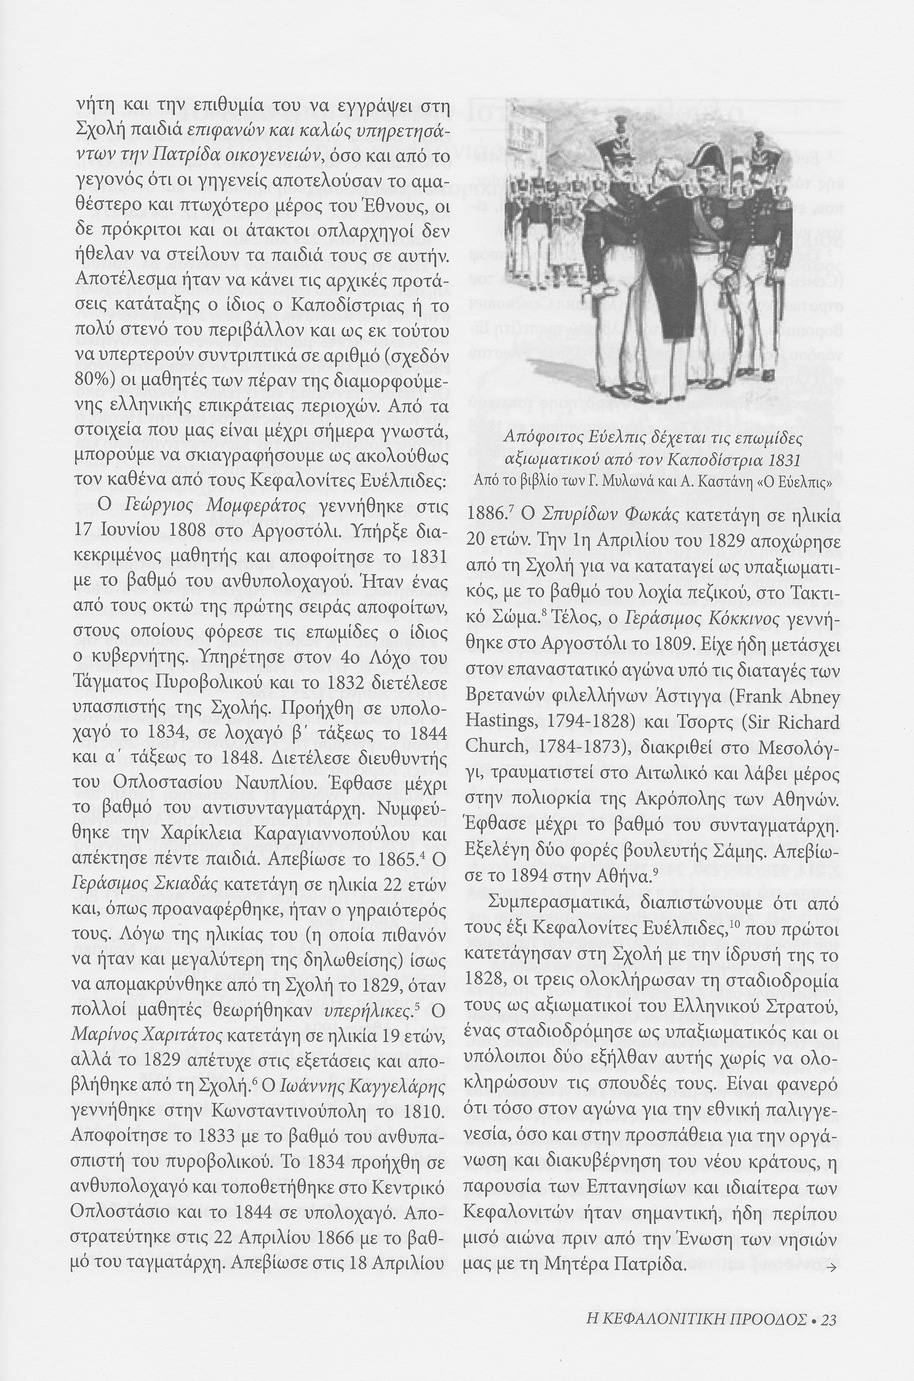 Κεφαλονίτες Ευέλπιδες , Κεφαλονίτικη Πρόοδος, Β-15, σελ. 23